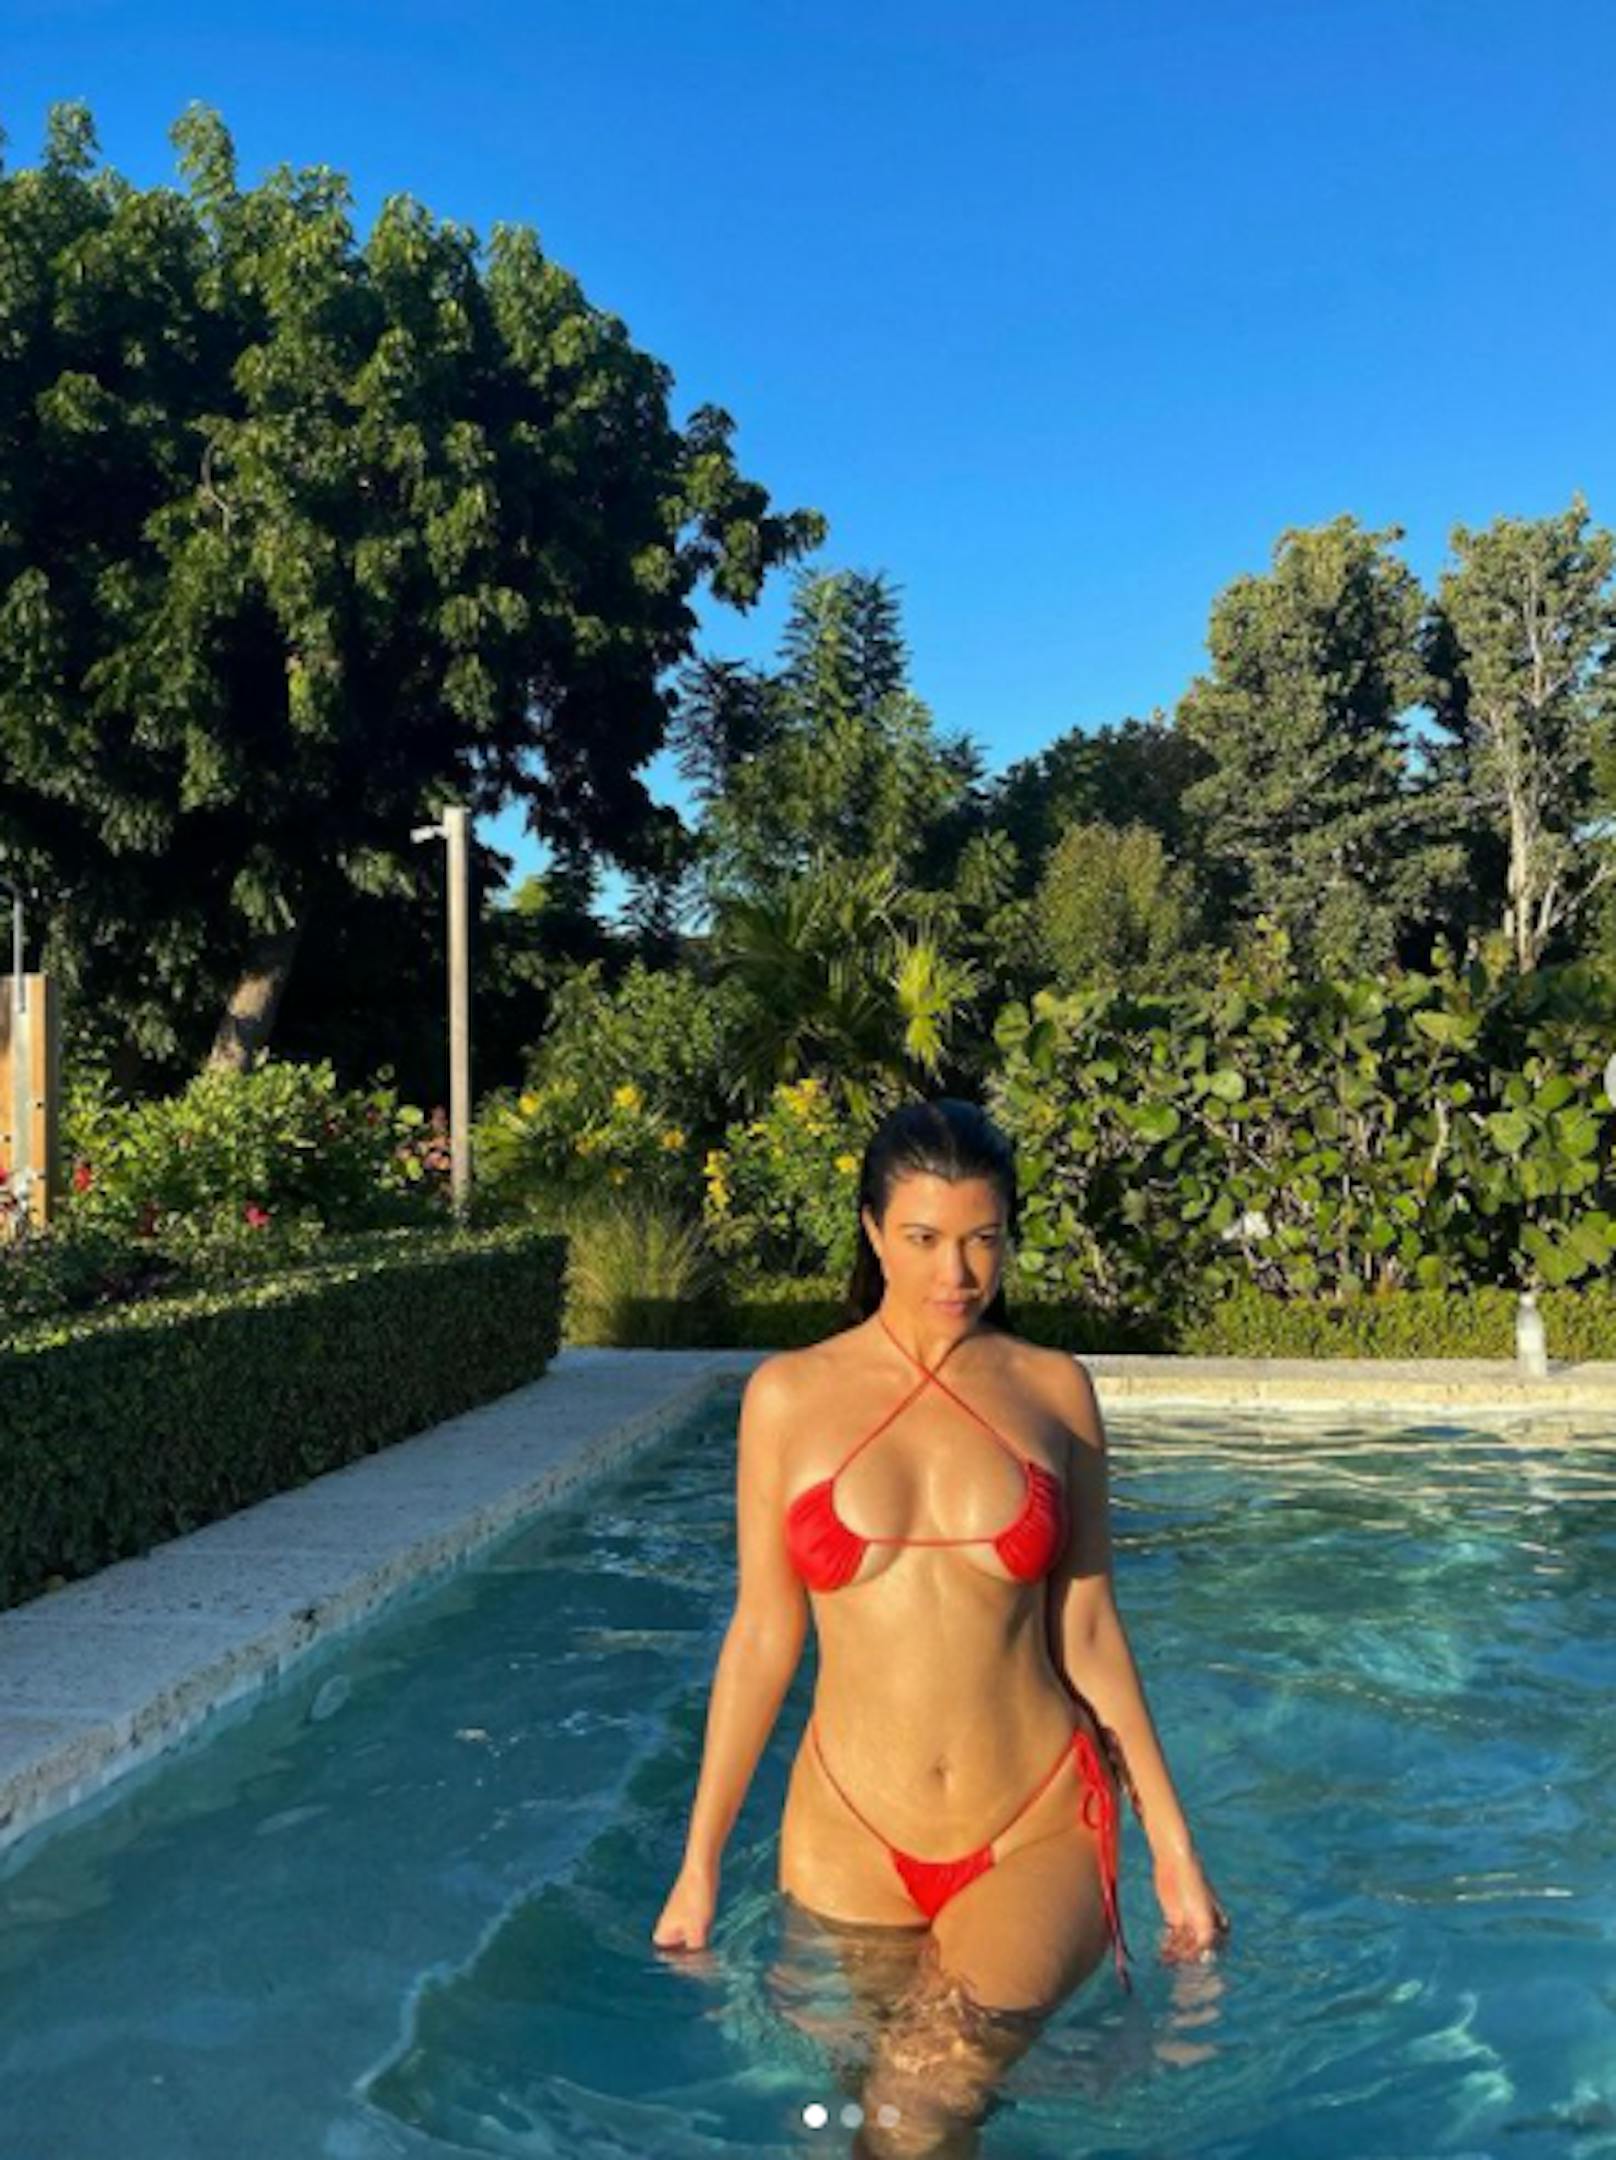 Knapper könnte der Bikini von Kourtney Kardashian nicht sein. "Bisschen Spaß in der Sonne", kommentierte sie das Foto.